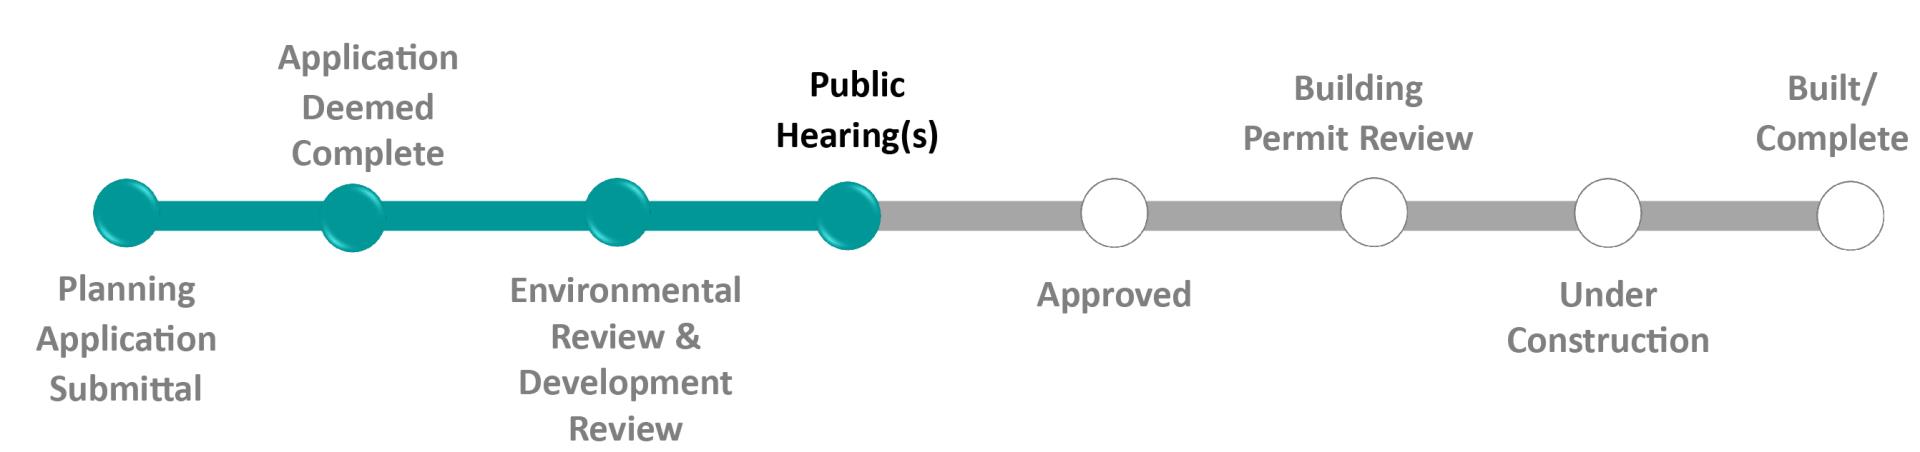 Status - Public Hearings